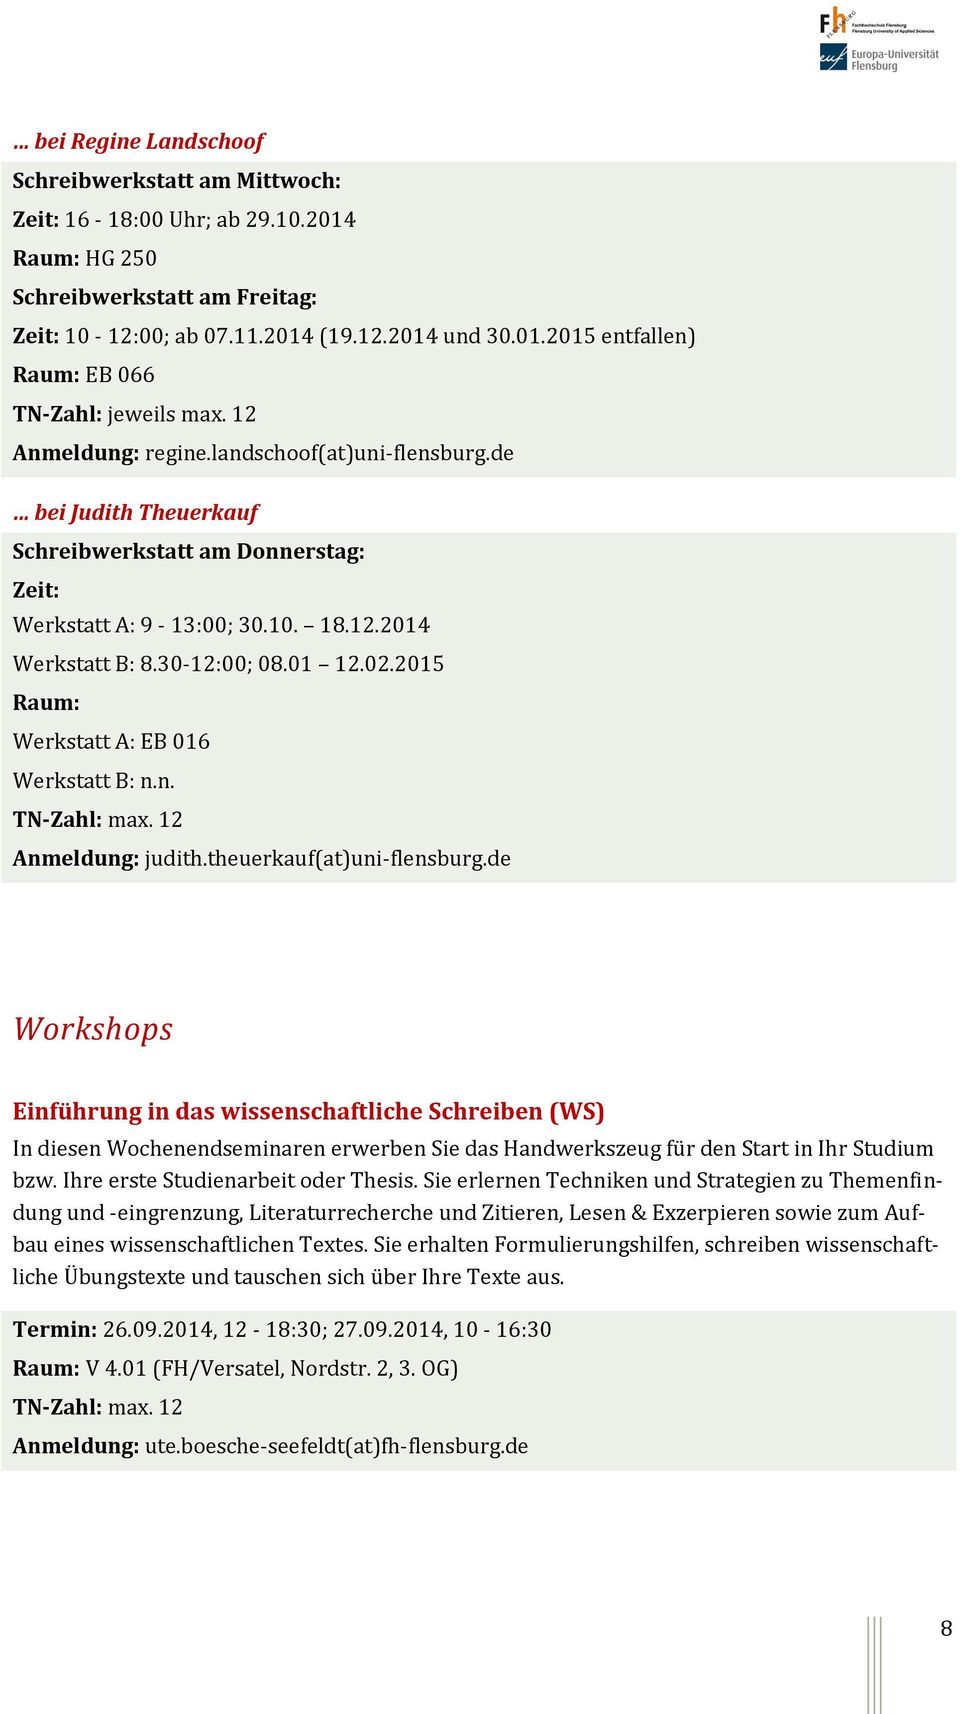 2015 Raum: Werkstatt A: EB 016 Werkstatt B: n.n. TN-Zahl: max. 12 Anmeldung: judith.theuerkauf(at)uni-flensburg.